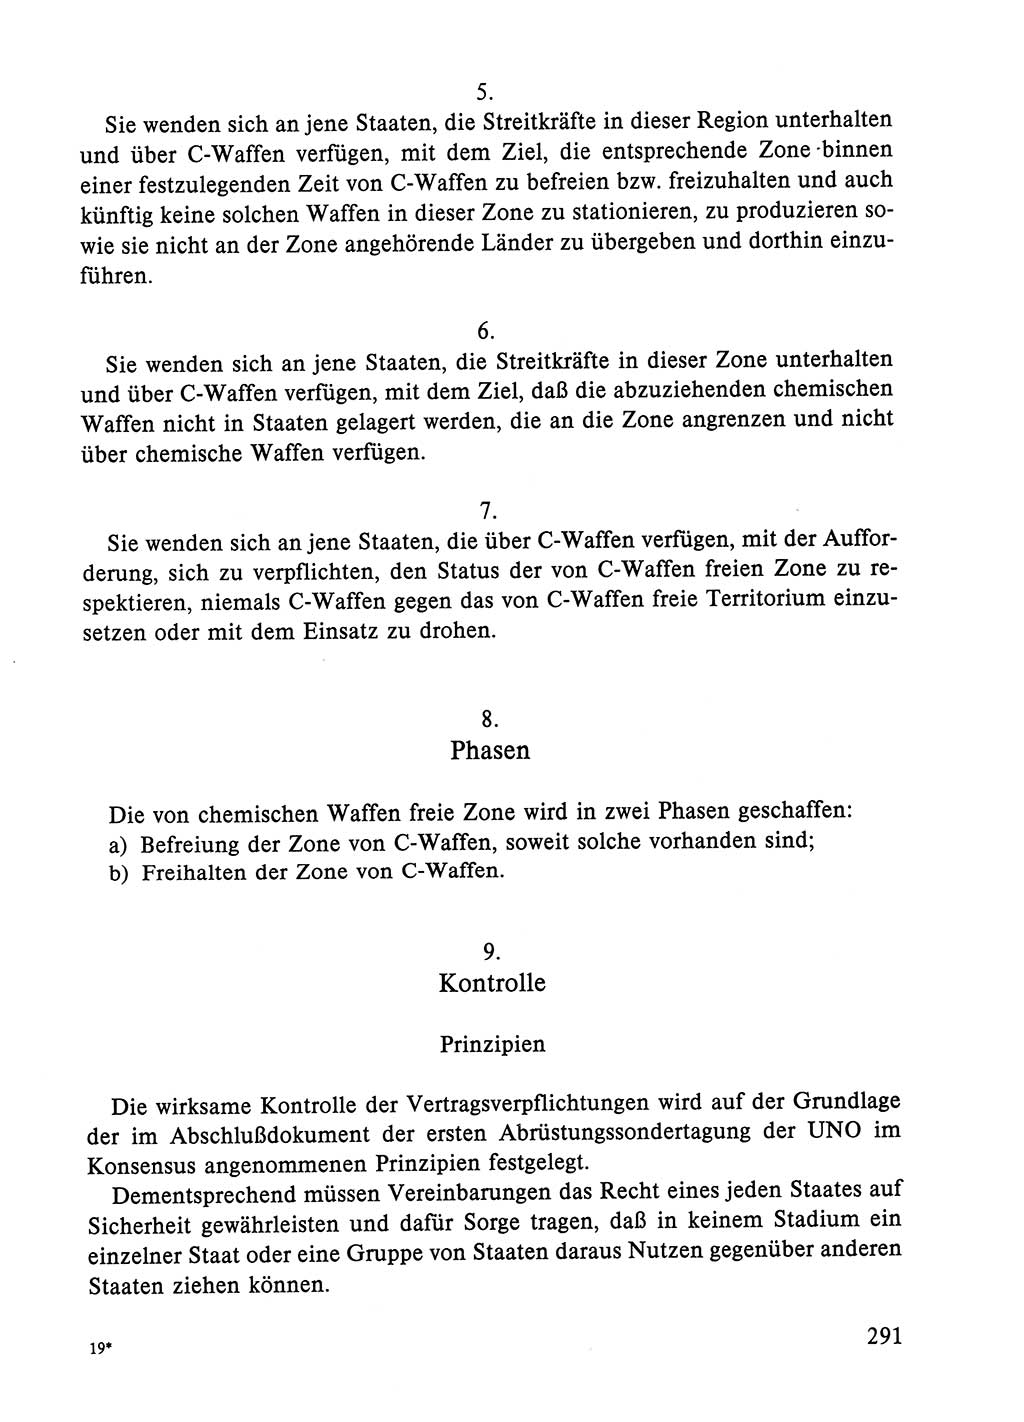 Dokumente der Sozialistischen Einheitspartei Deutschlands (SED) [Deutsche Demokratische Republik (DDR)] 1984-1985, Seite 136 (Dok. SED DDR 1984-1985, S. 136)